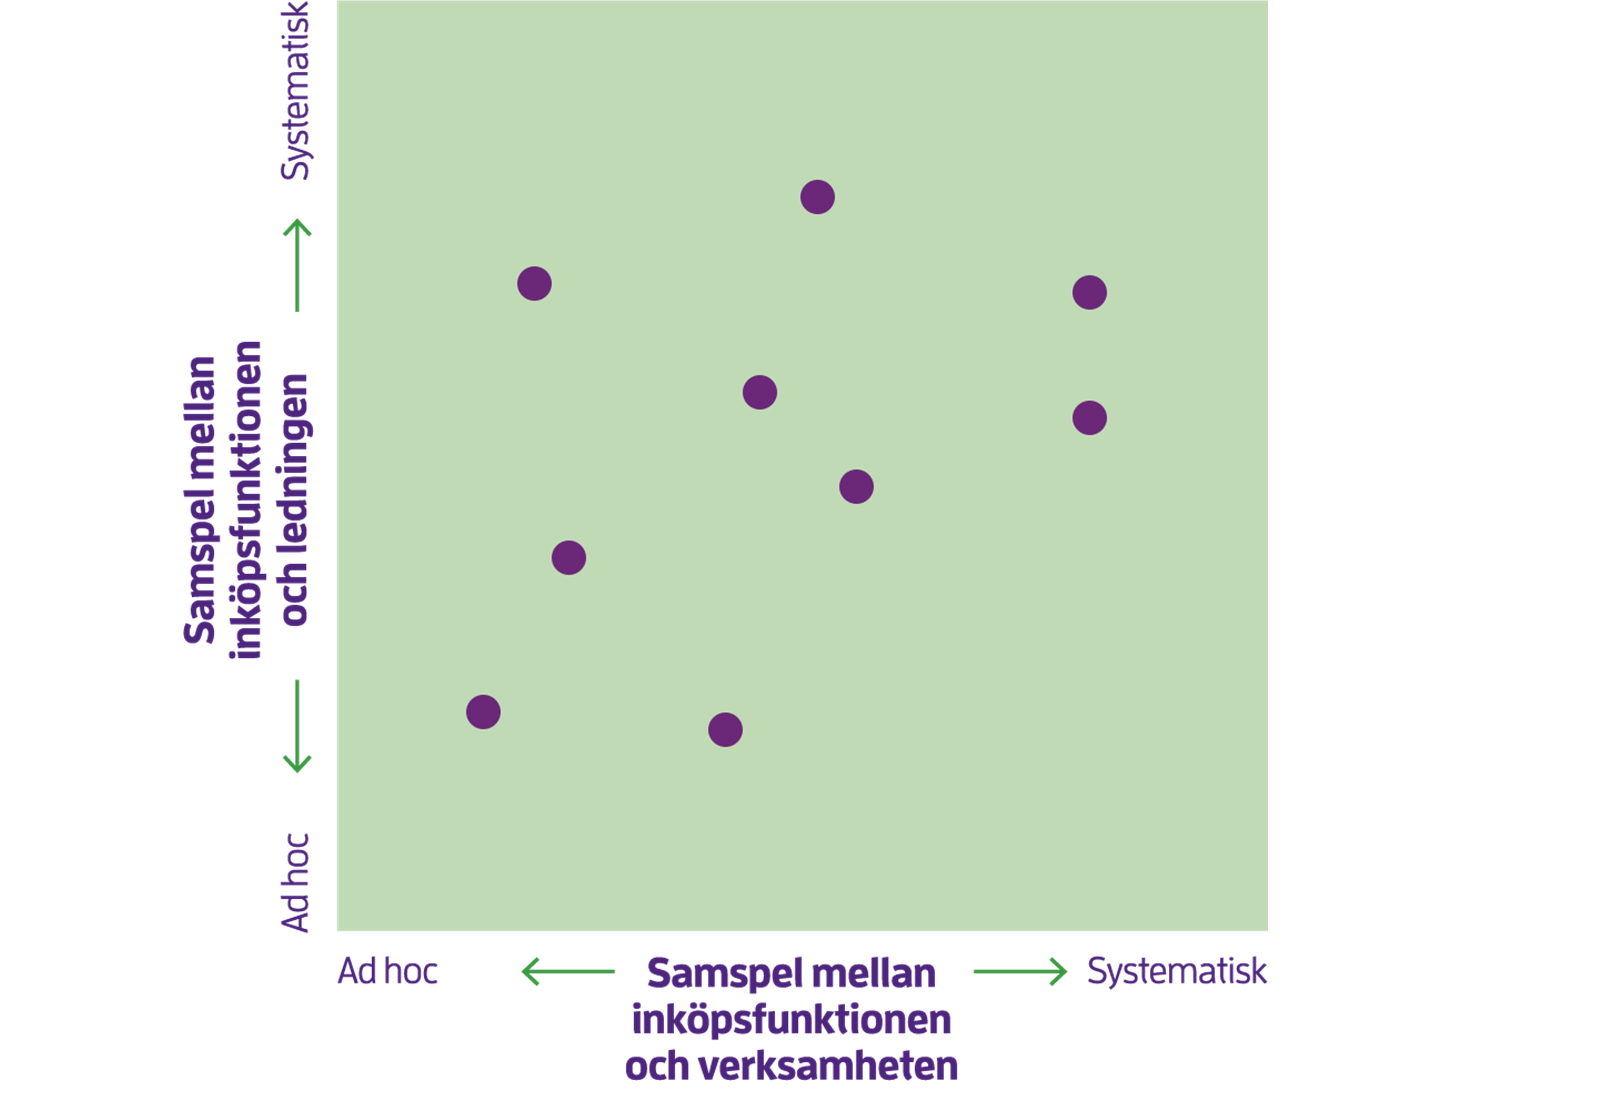 På grafens Y axel visas samspel mellan inköpsfunktion och verksamhet från ad hoc till systematisk och på X axeln samspel mellan inköpsfunktion och verksamhet från ad hoc till systematisk. 